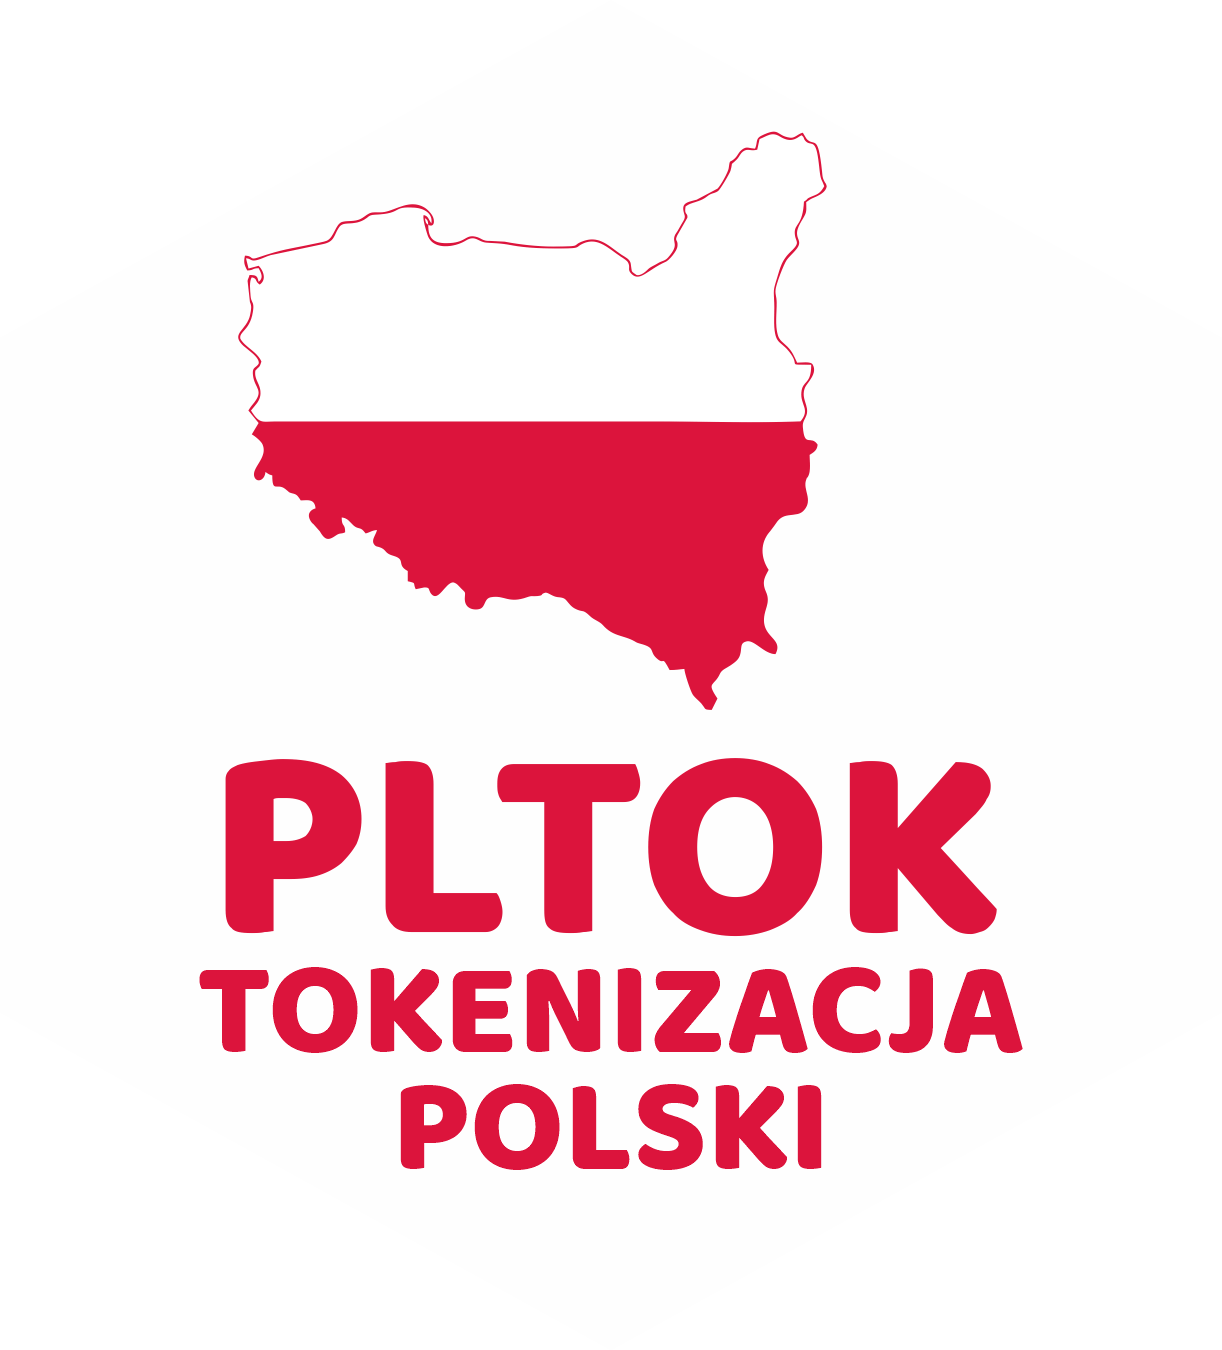 PLTOK🟠TOKENIZATION POLAND